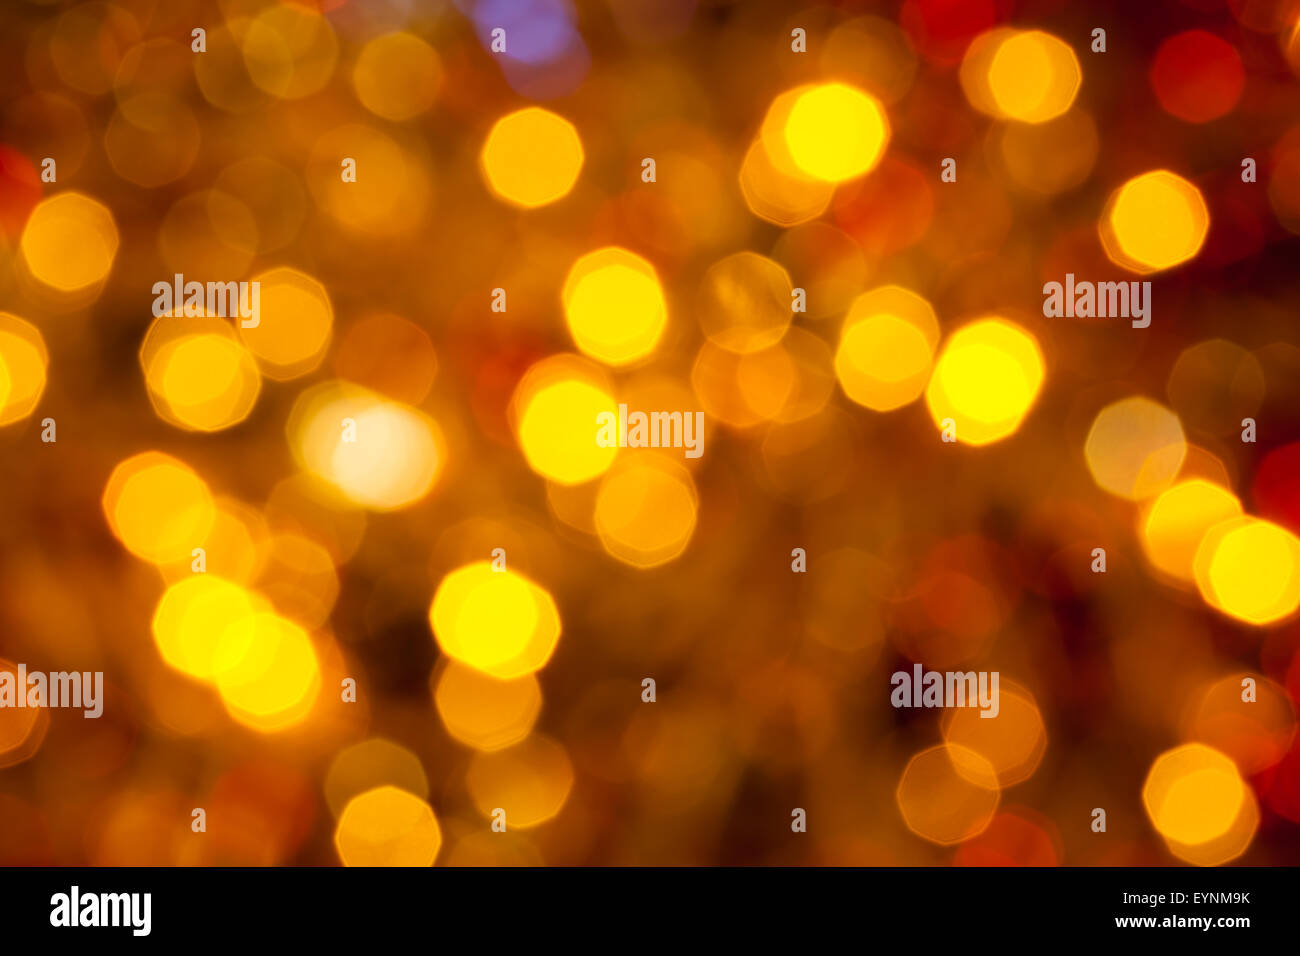 Abstract sfondo sfocato - marrone scuro, giallo e rosso lo sfarfallio delle luci di Natale di le ghirlande elettriche su albero di Natale Foto Stock